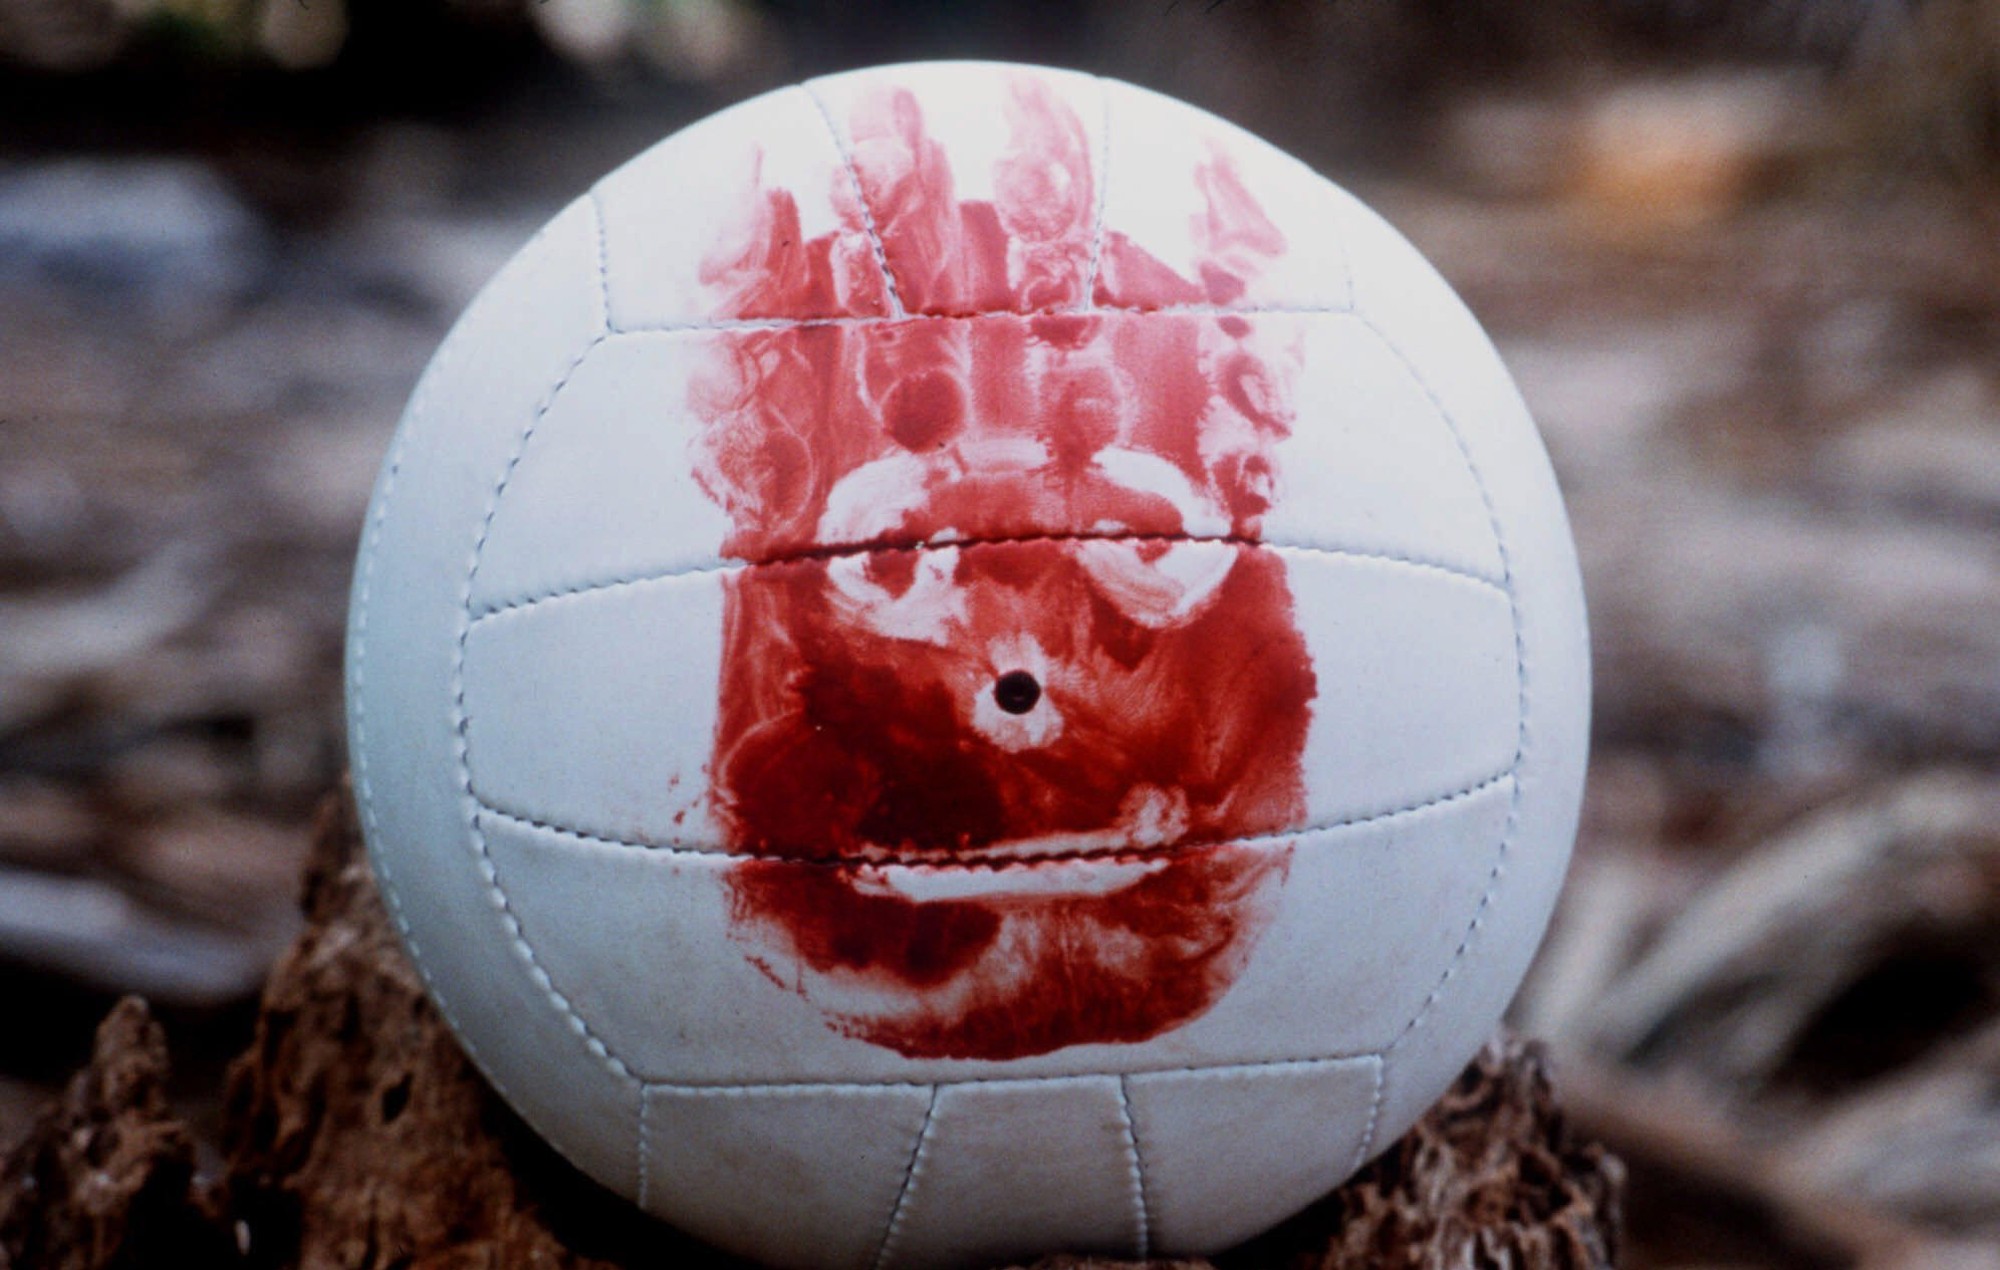 El balón de voleibol de Tom Hanks de "Cast Away" se vende por 230.000 libras en una subasta